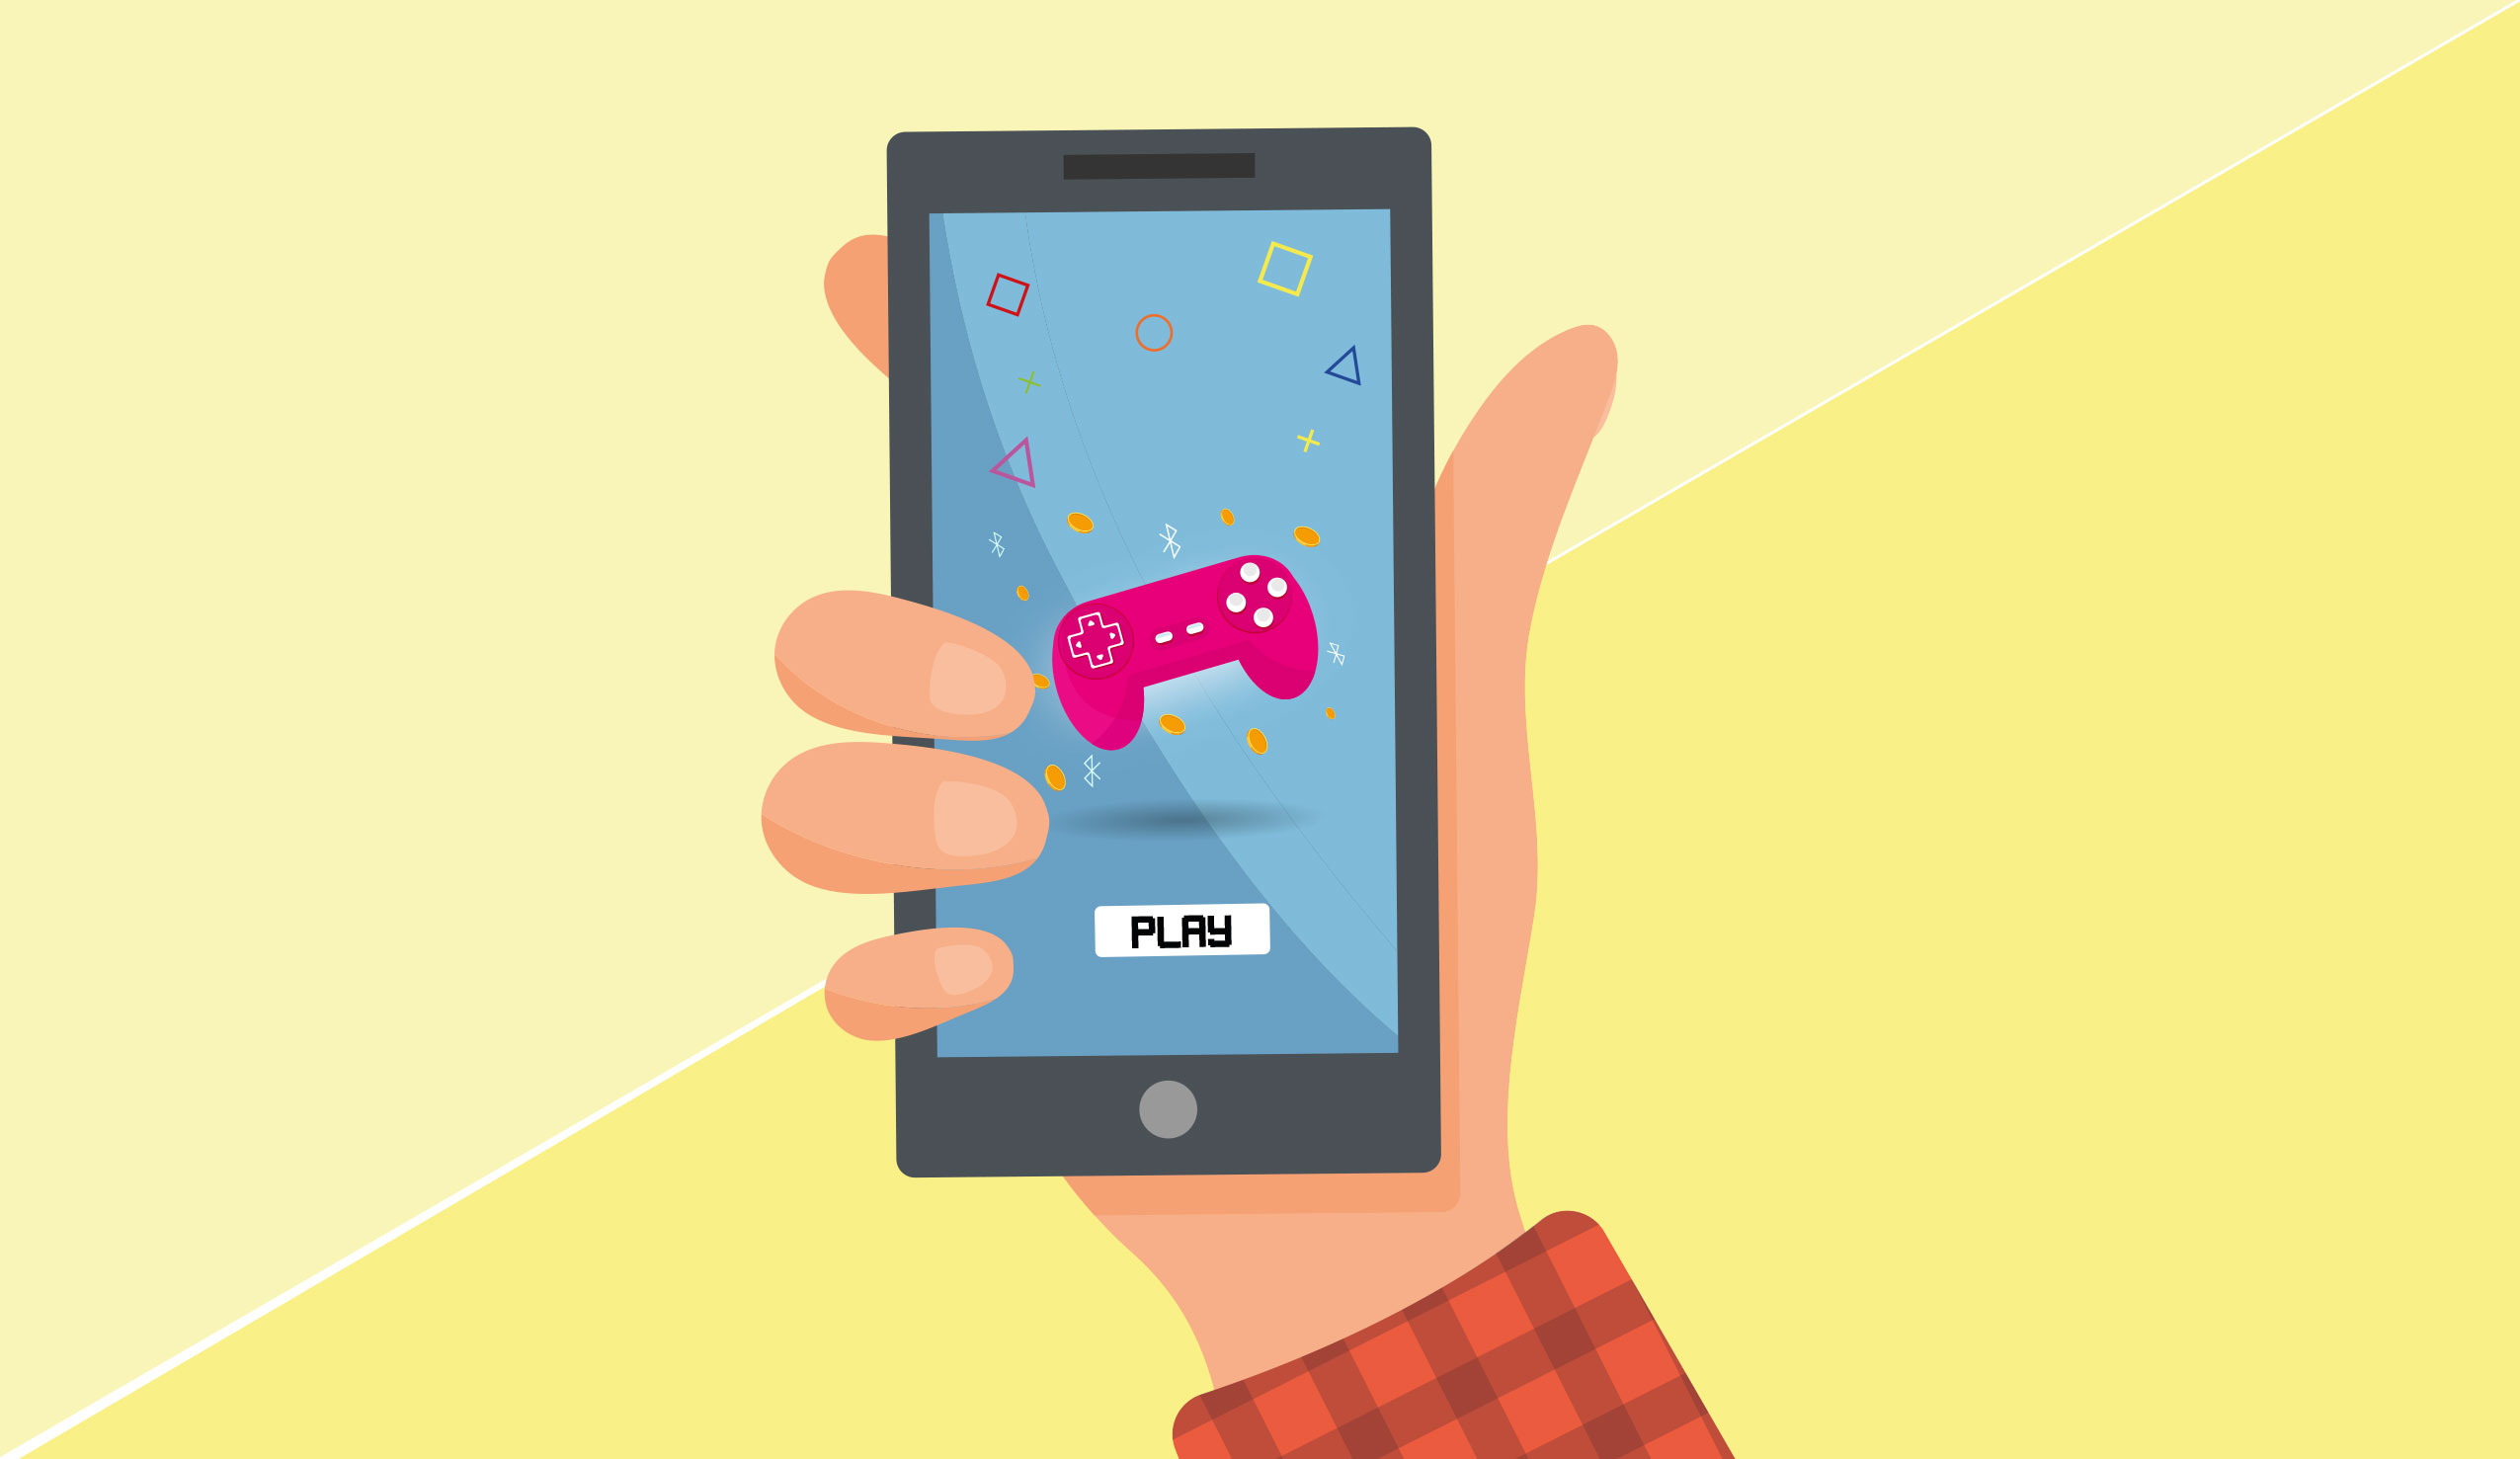 I videogiochi spopolano tra le app mobile: tutti i dati